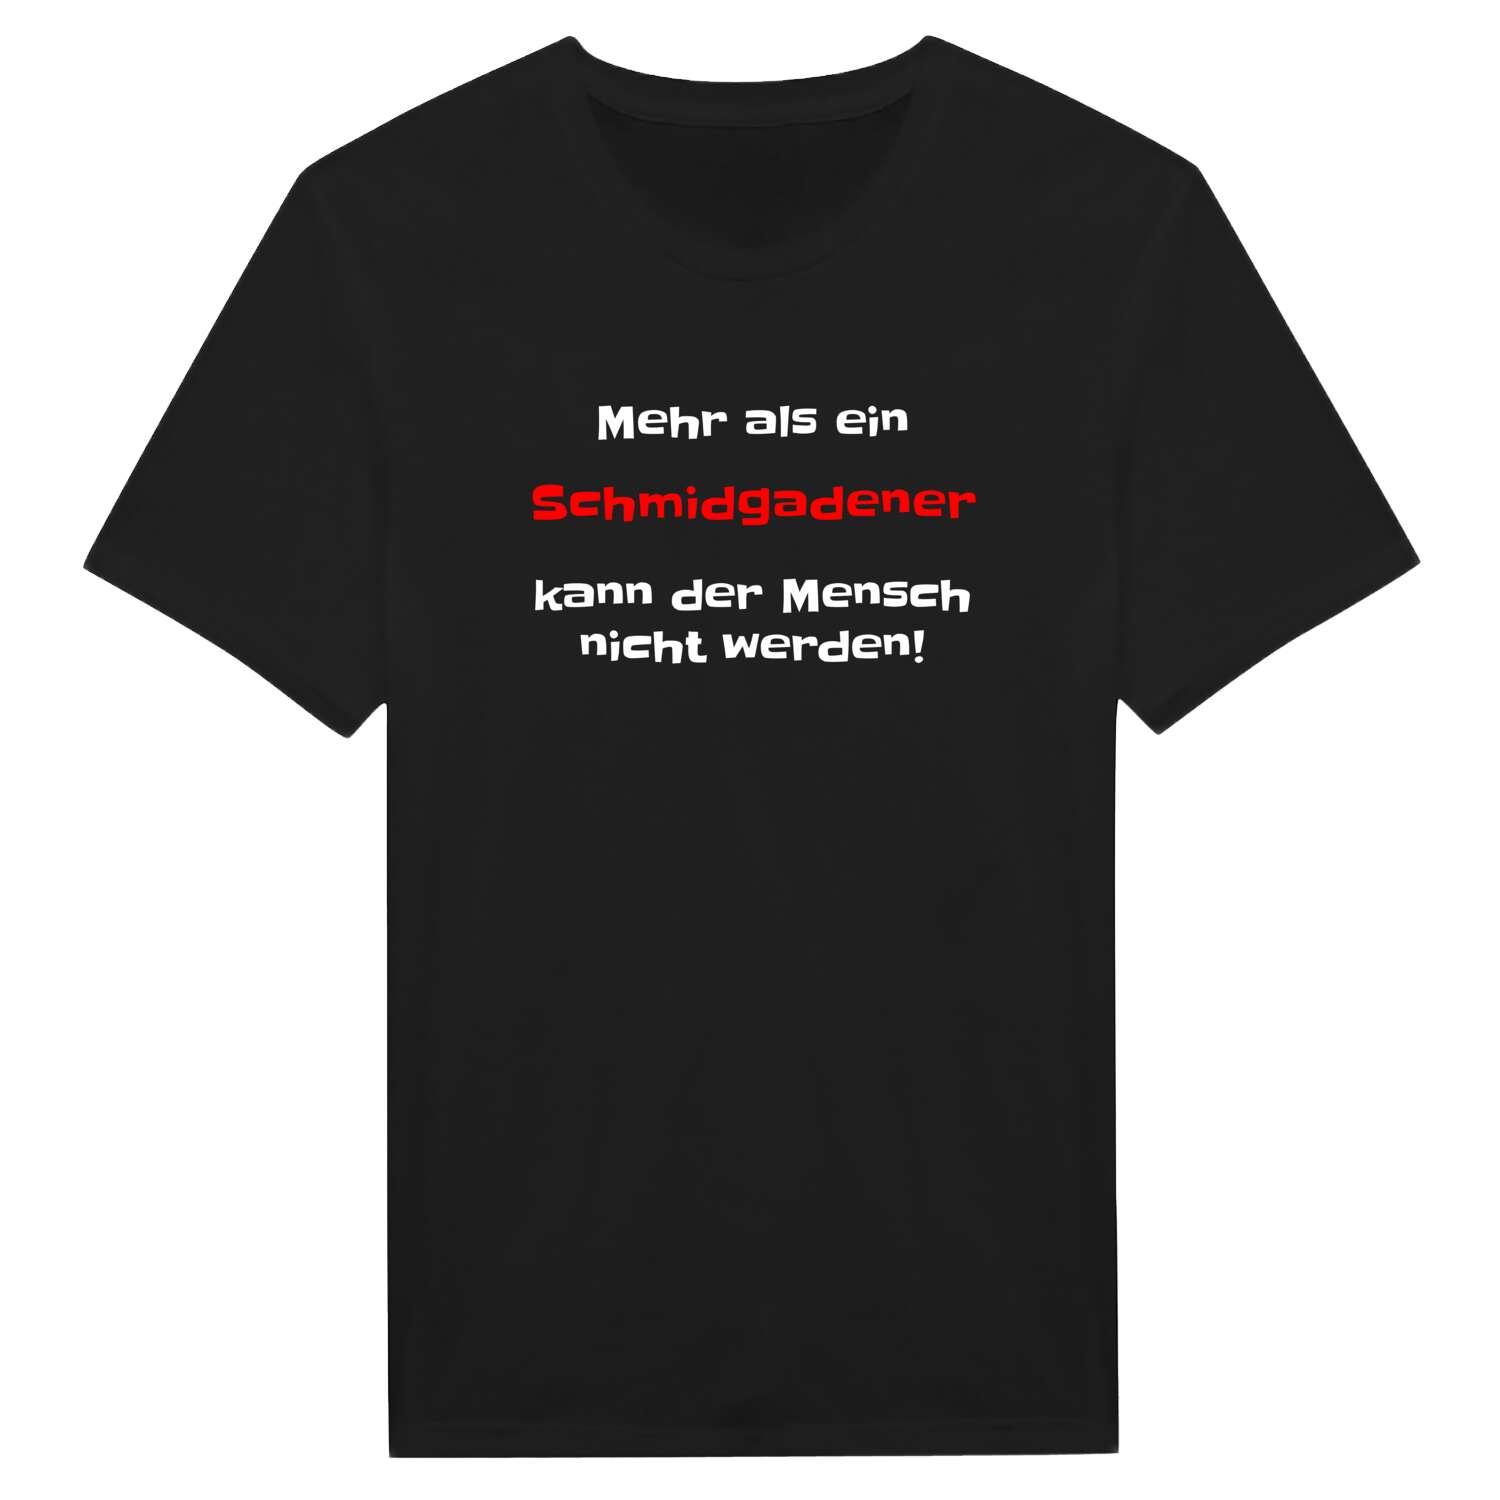 Schmidgaden T-Shirt »Mehr als ein«